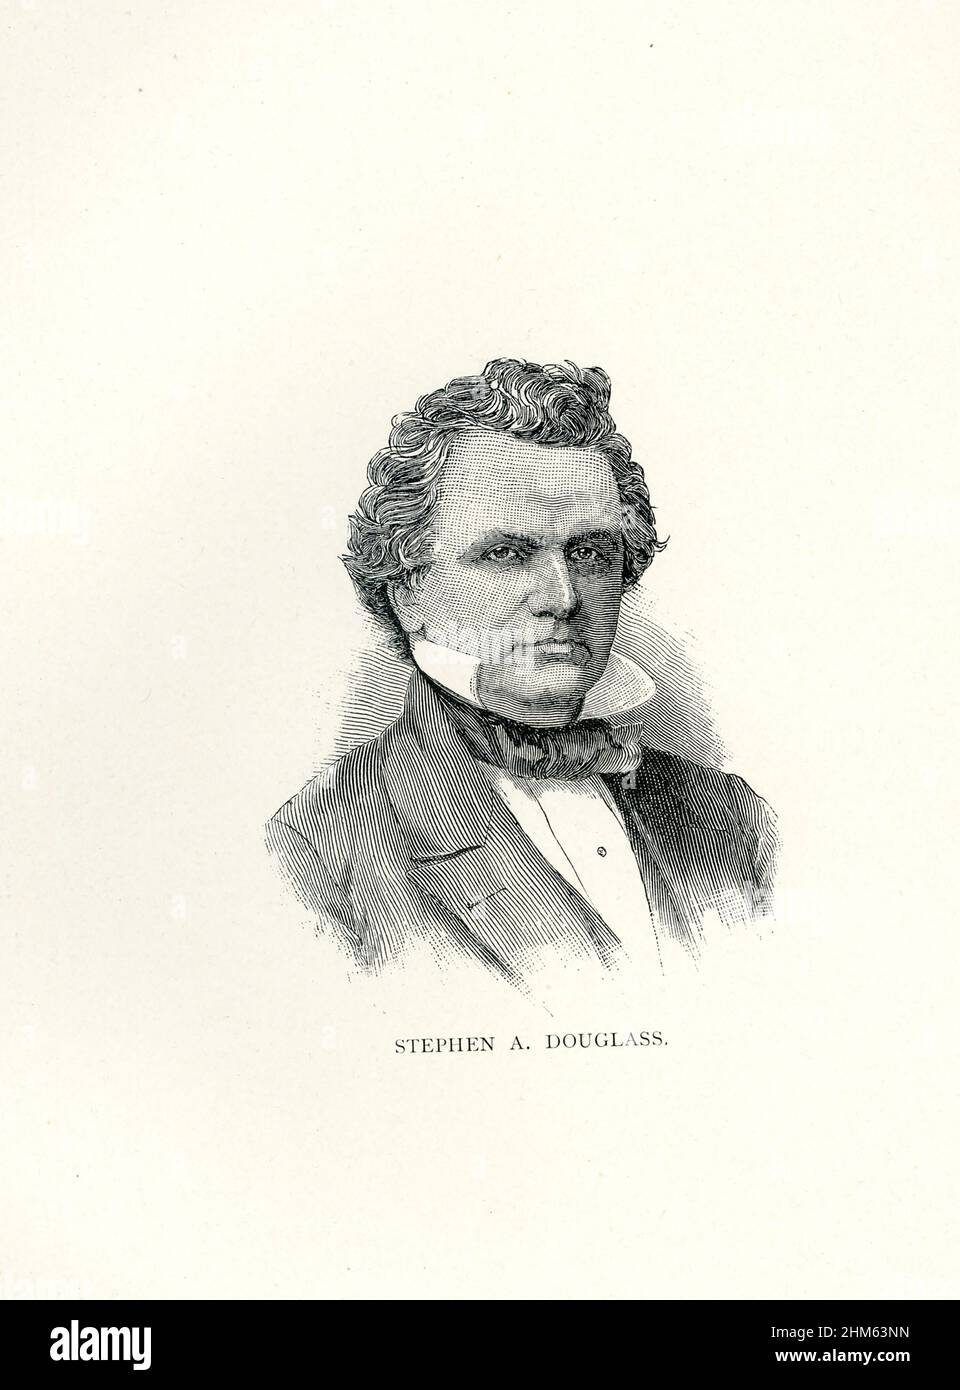 Stephen Arnold Douglas (décédé en 1861) était un homme politique et un avocat américain de l'Illinois.Sénateur, il était l'un des deux candidats du Parti démocrate pour la présidence, très divisé, lors de l'élection présidentielle de 1860, qui a été remporté par le républicain Abraham Lincoln. Banque D'Images